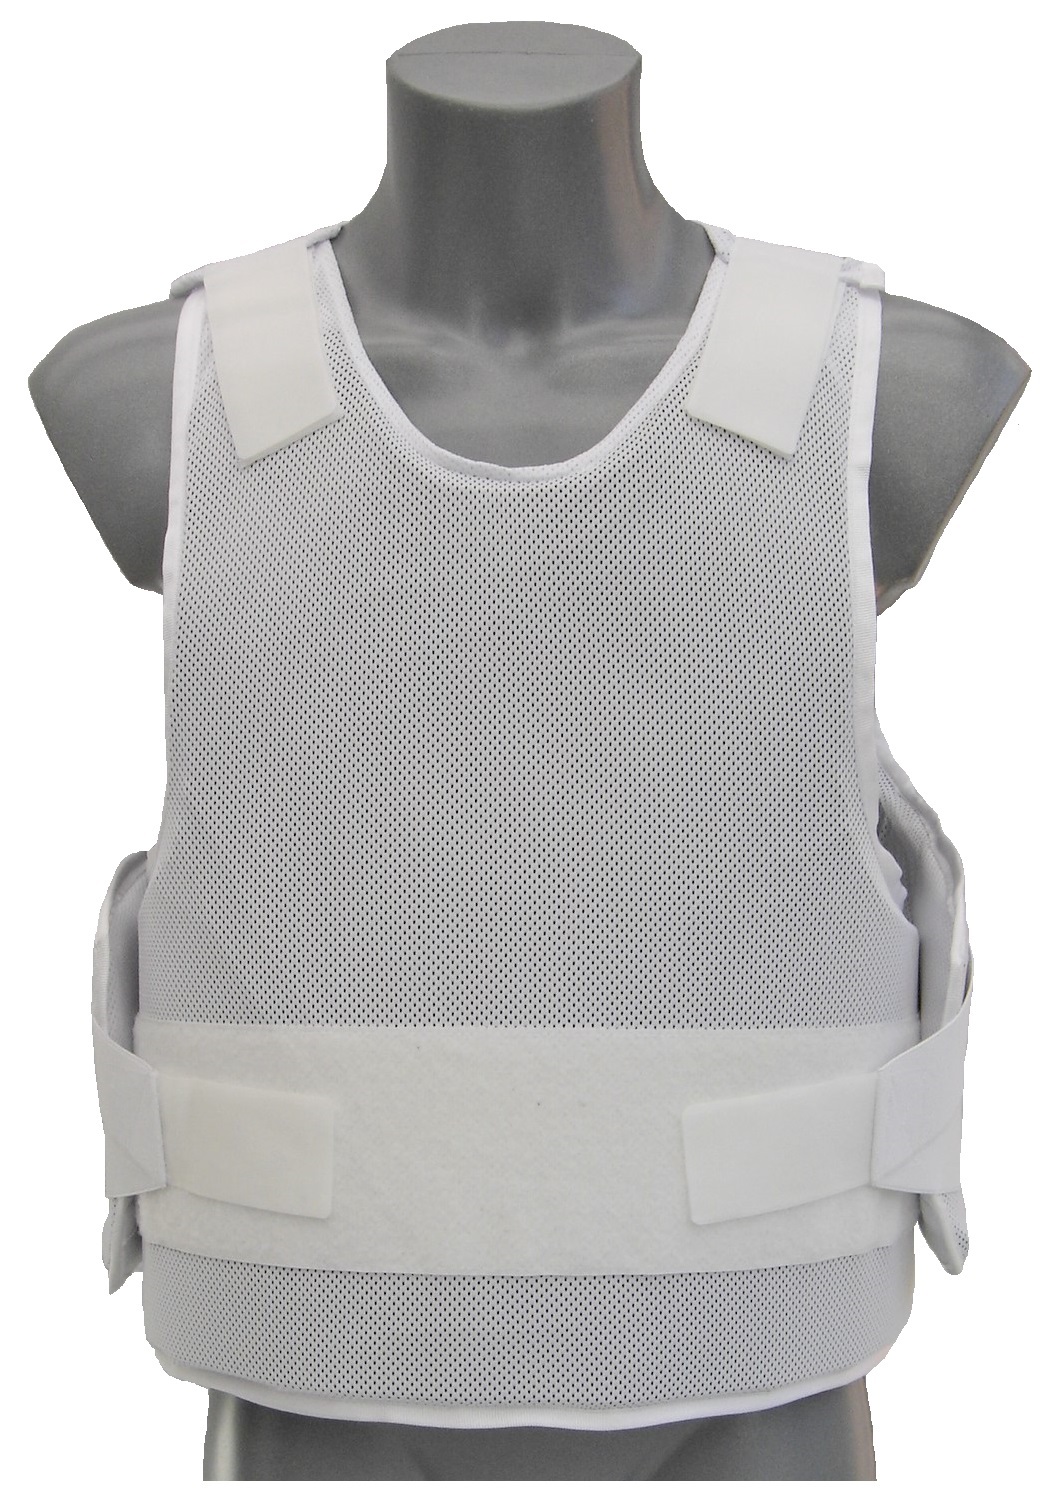 DeLuxe™ NIJ-3A(06) + 7.62x25 Tokarev white bullet proof vest